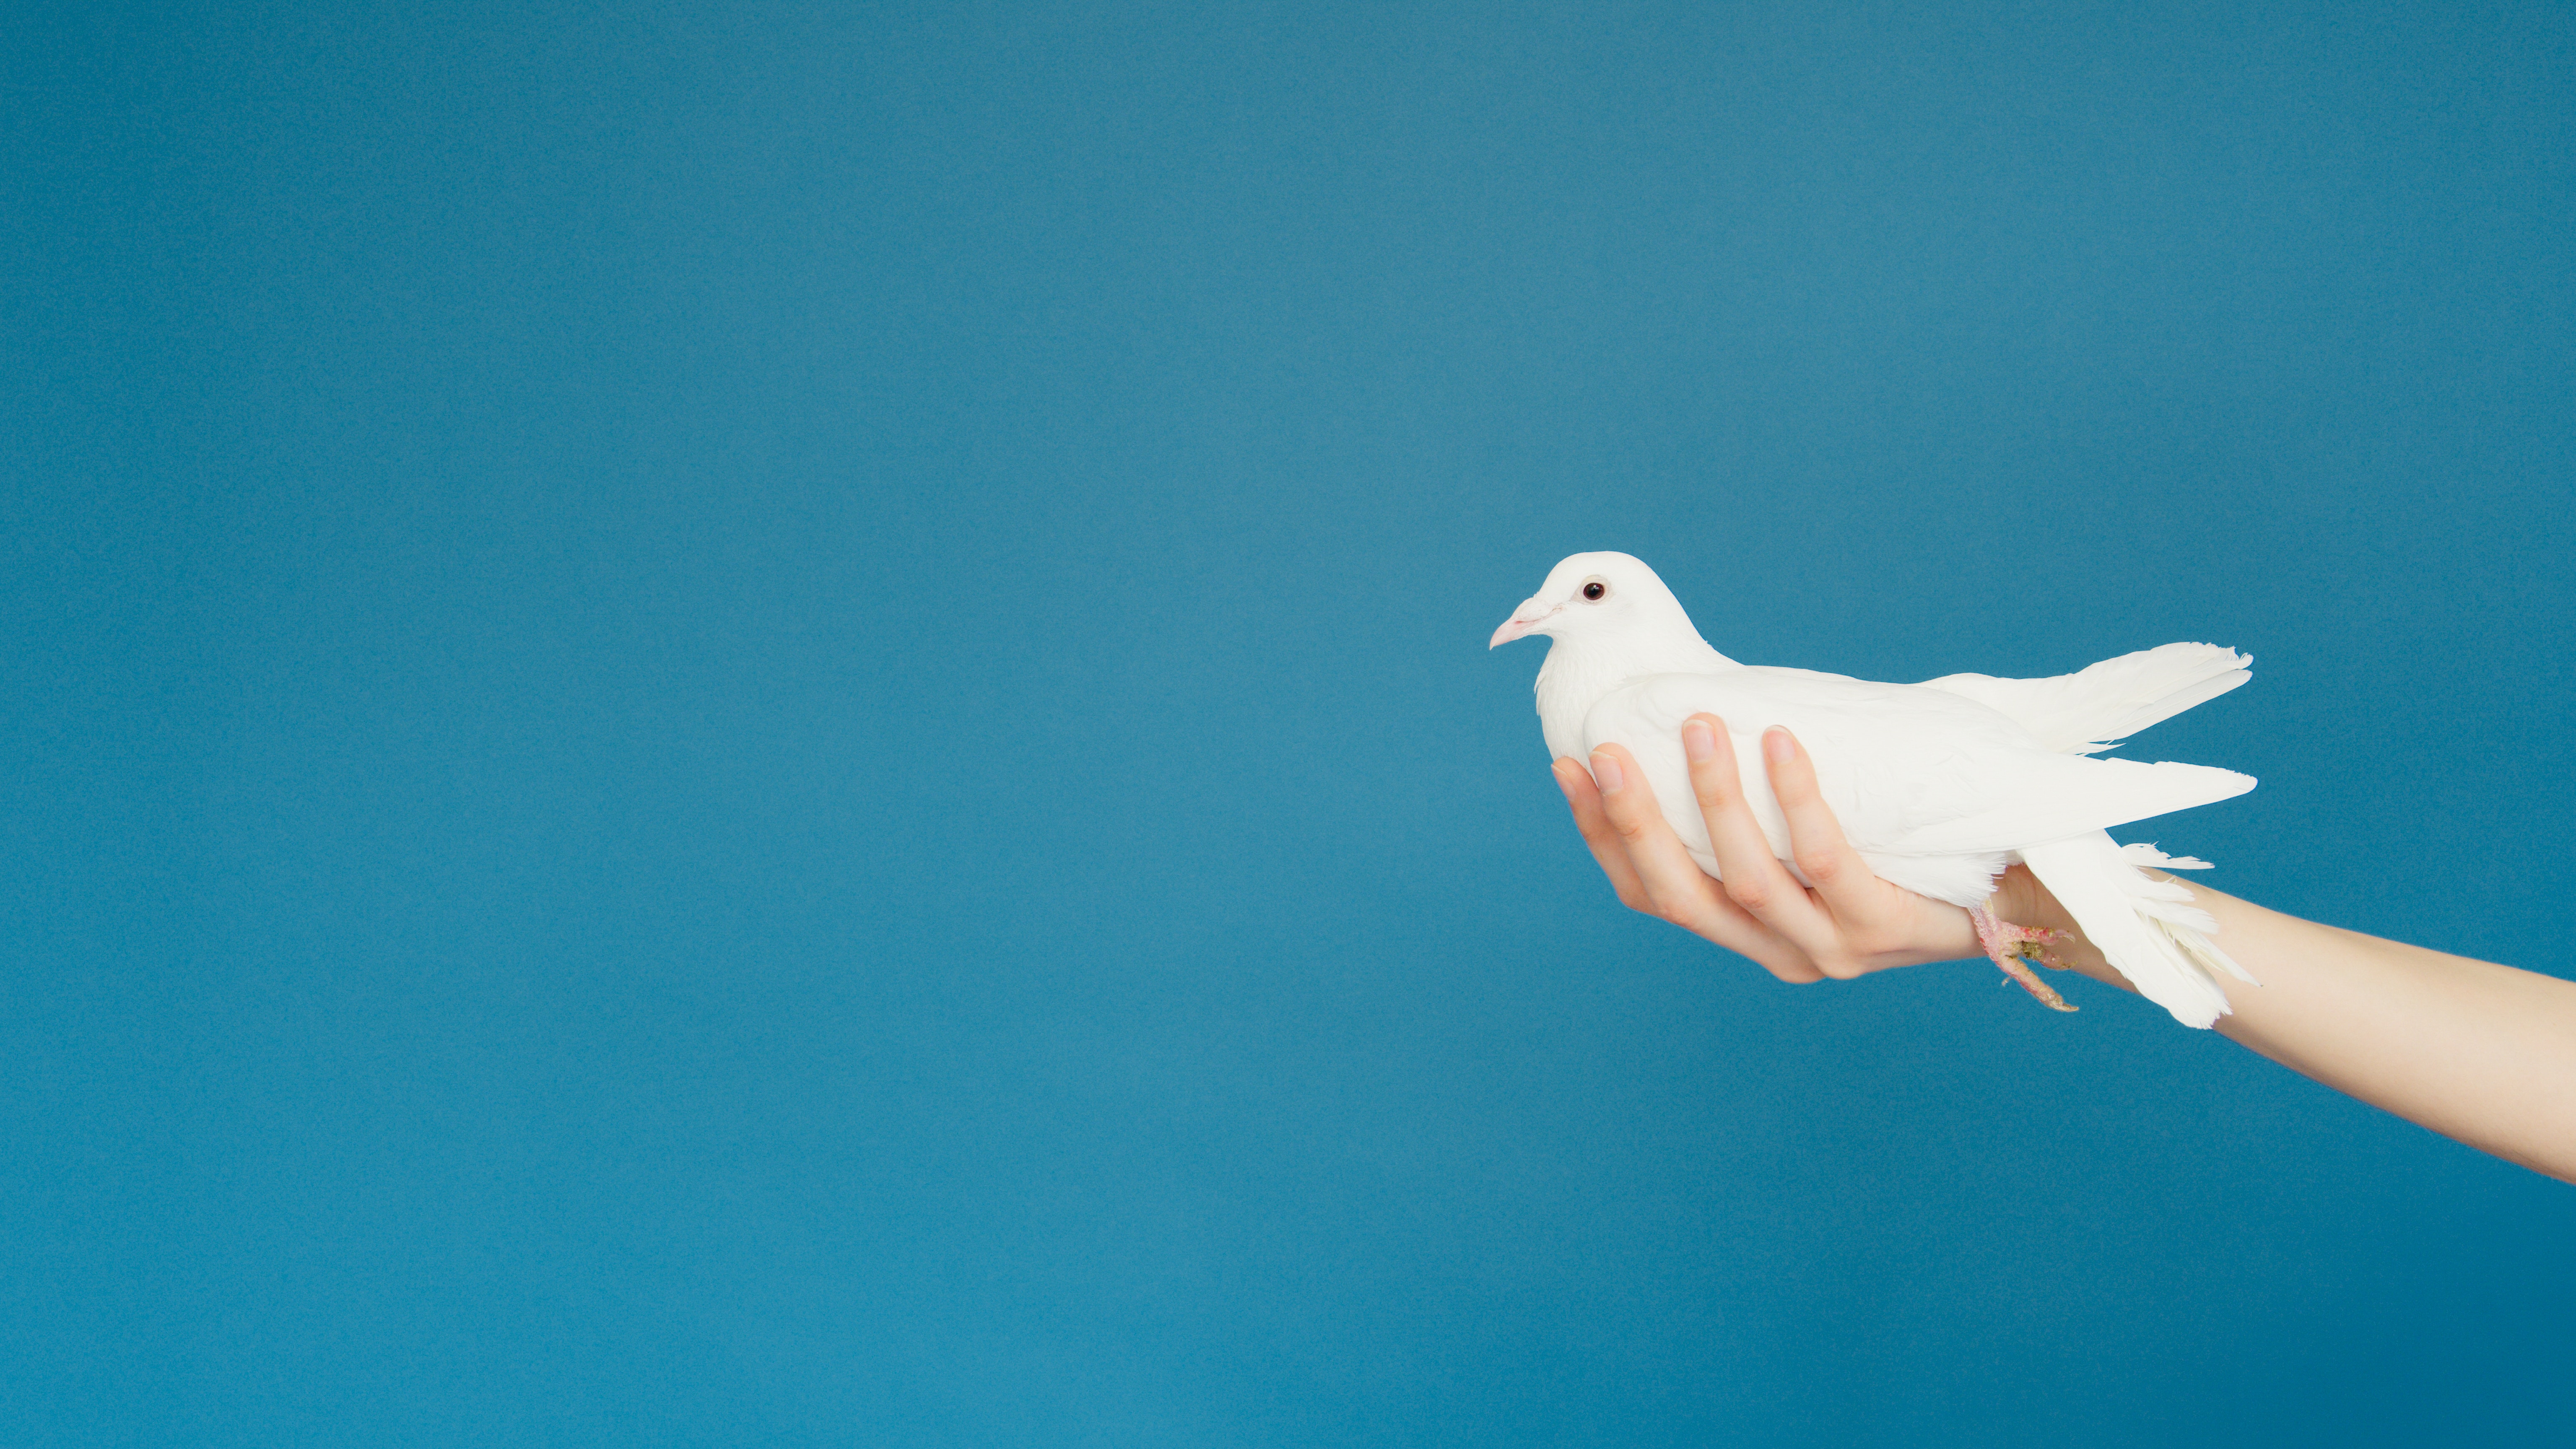 एक हाथ एक सफेद कबूतर को पकड़ता है और आगे बढ़ता है जैसे कि कबूतर को भेंट किया जाए।